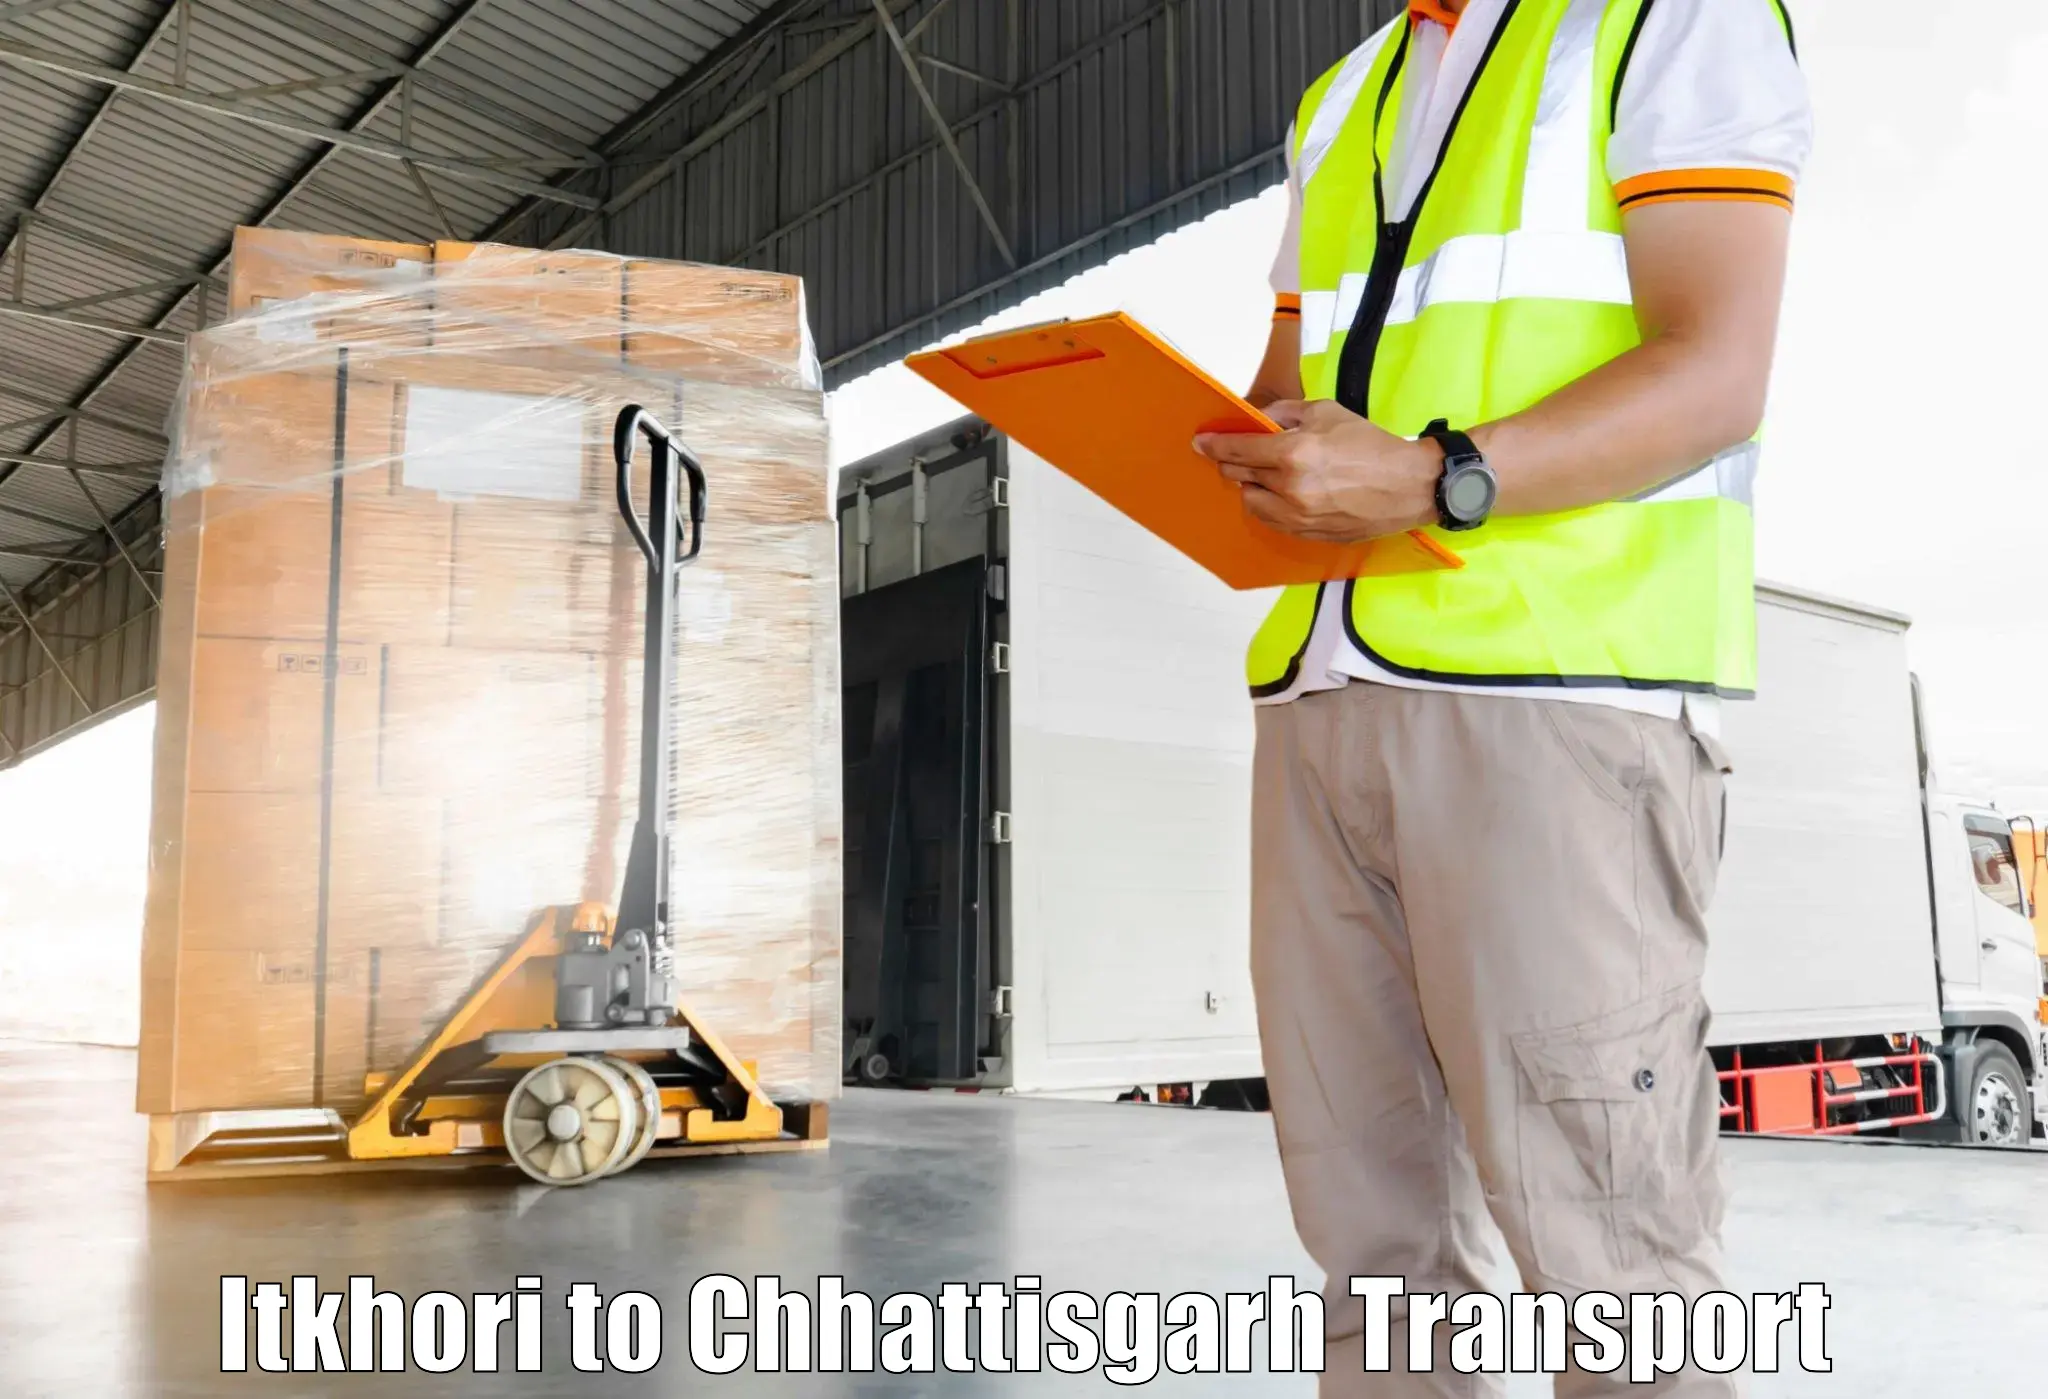 Online transport booking in Itkhori to Mandhar